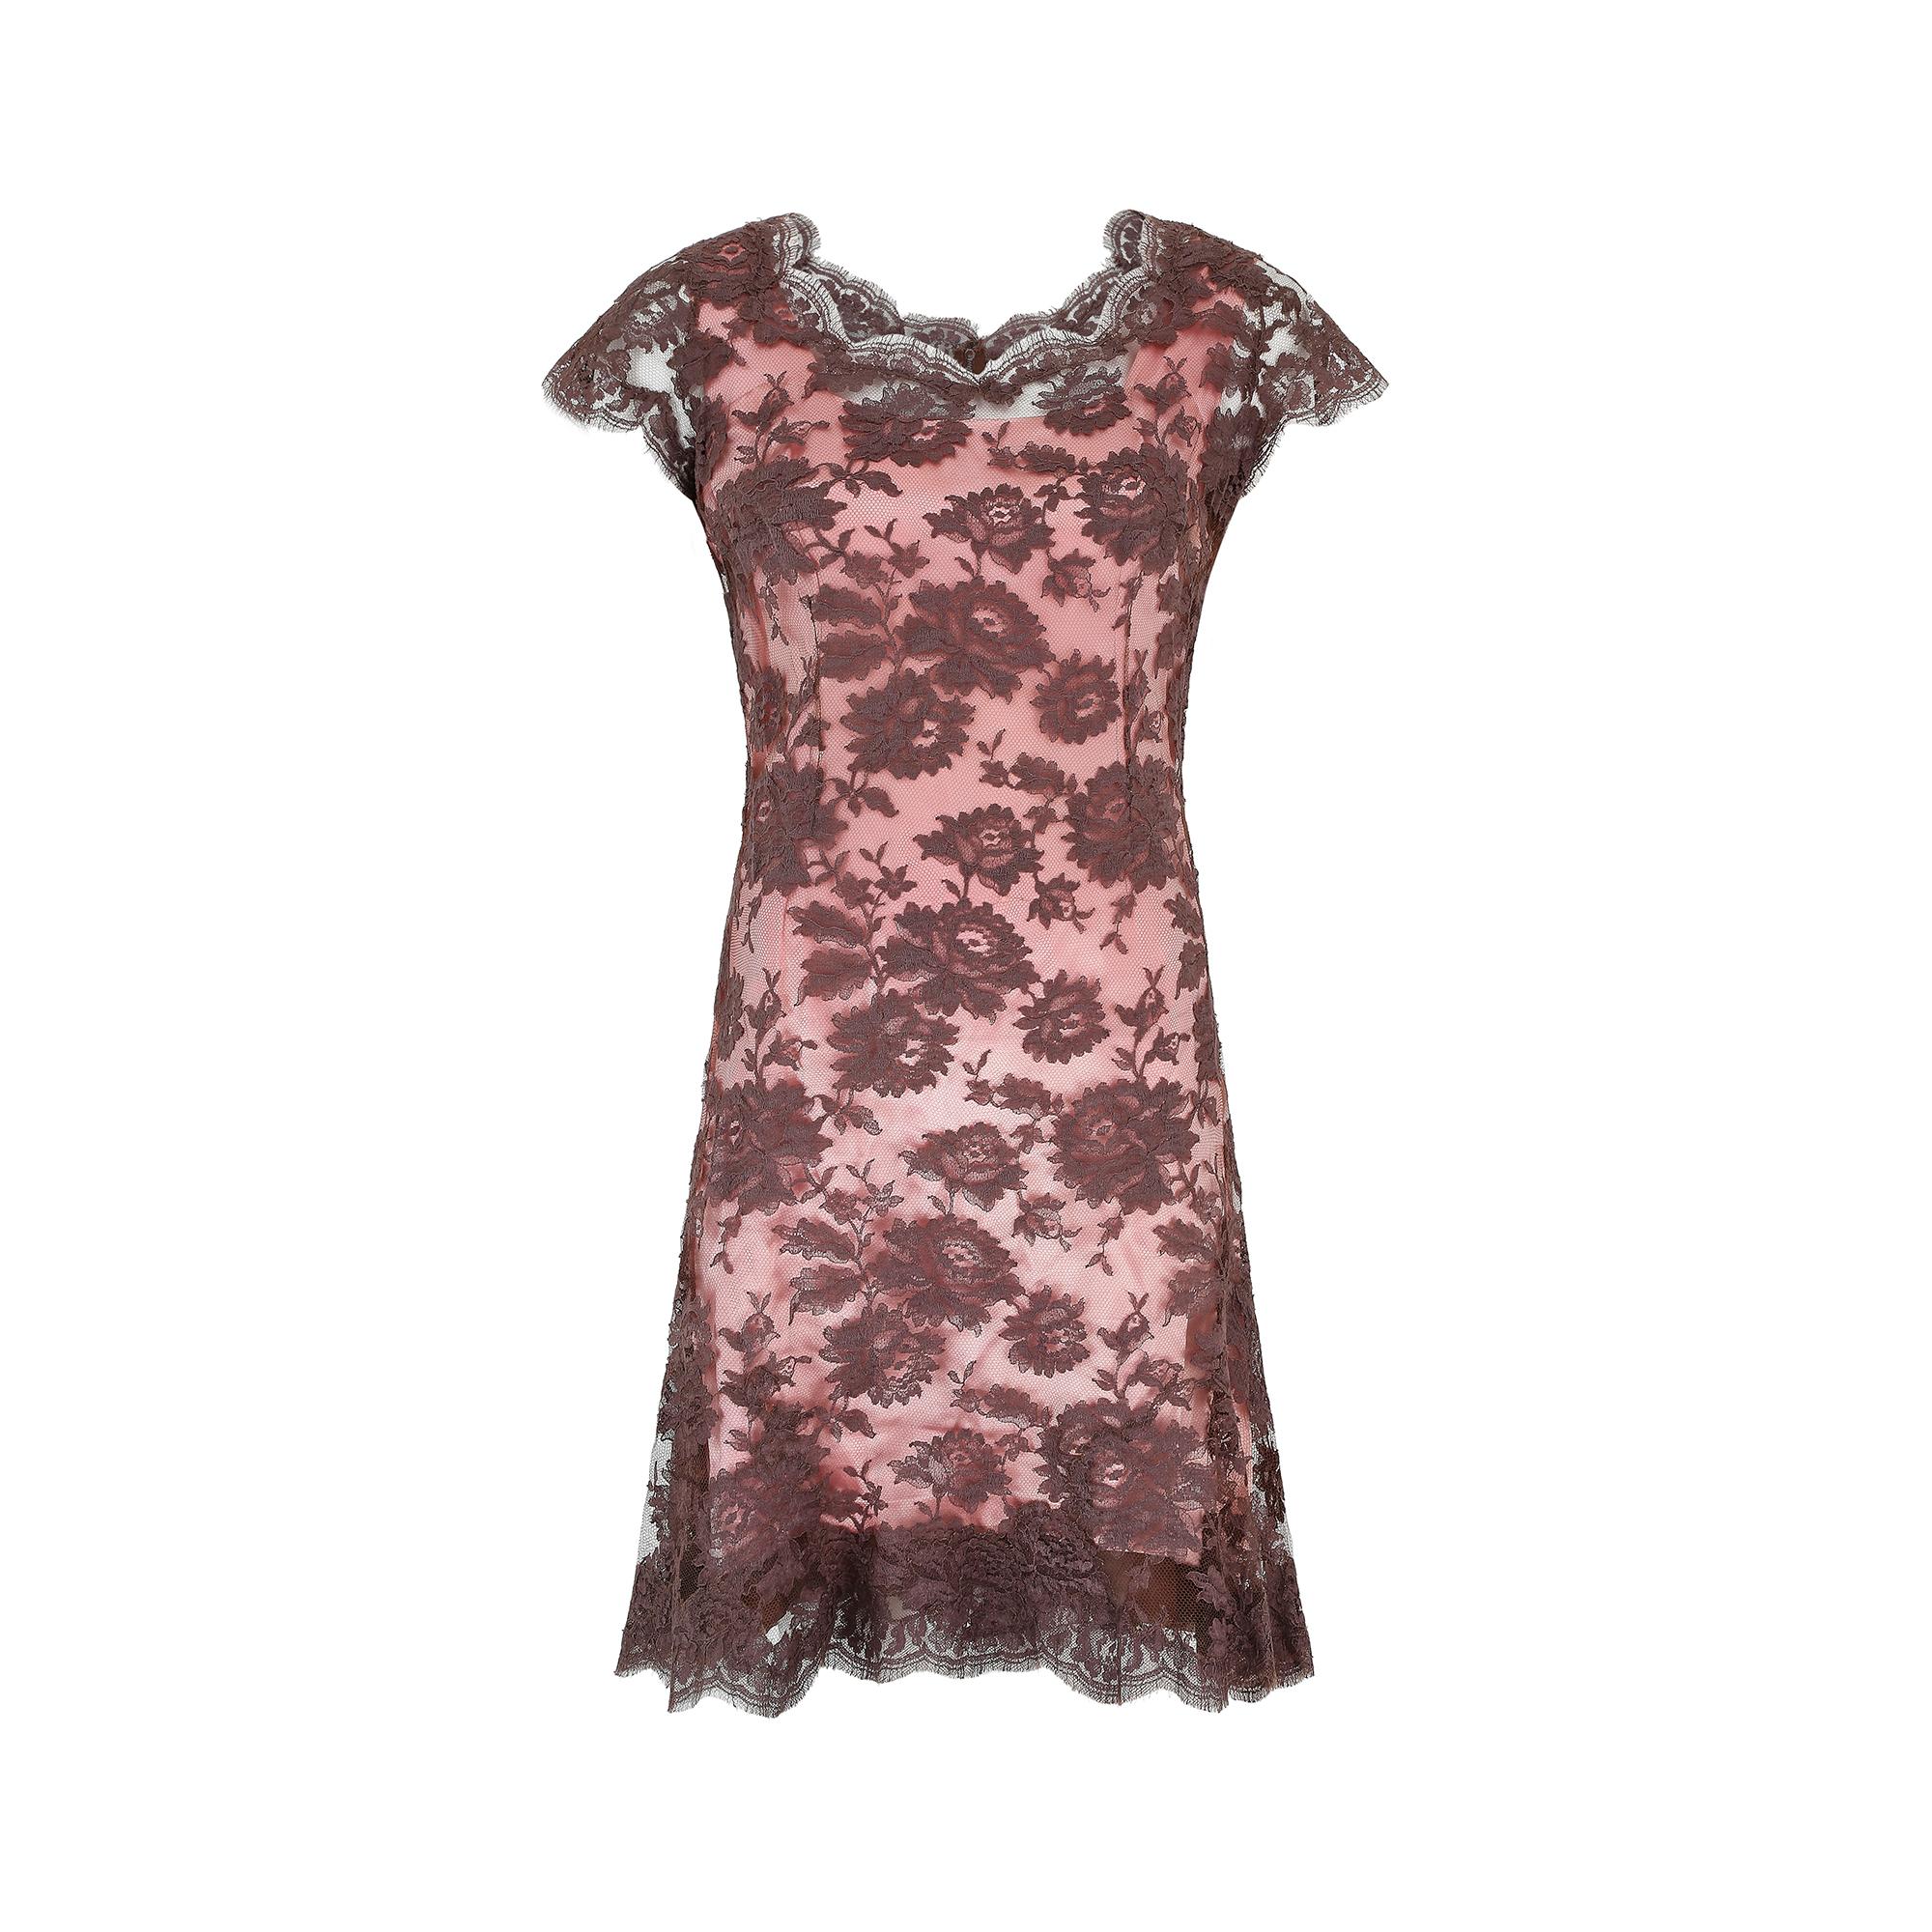 Ein prächtiges Couture-Mantelkleid aus den 1950er Jahren von Worth London in einer auffälligen Kombination aus blassrosa Seidensatin und brauner Spitze. Der Unterrock ist aus luxuriöser, weicher, rosafarbener Seide mit schokoladenbraunem